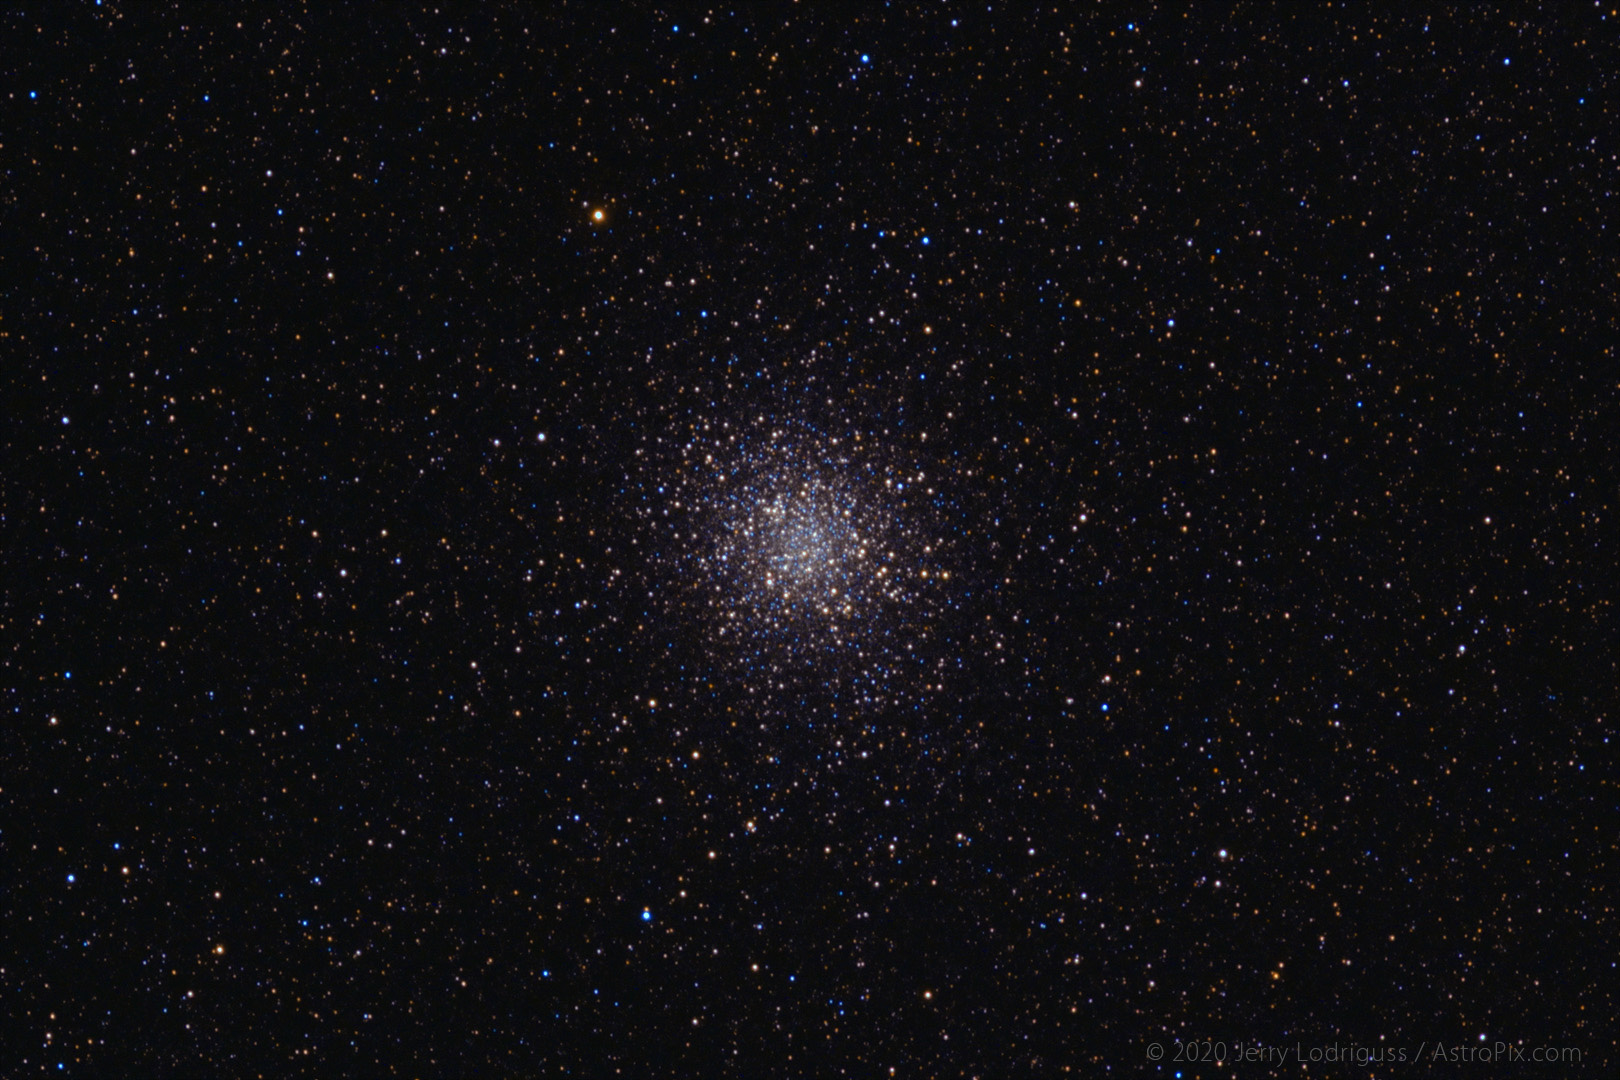 Globular Cluster M22 is located in the constellation of Sagittarius.